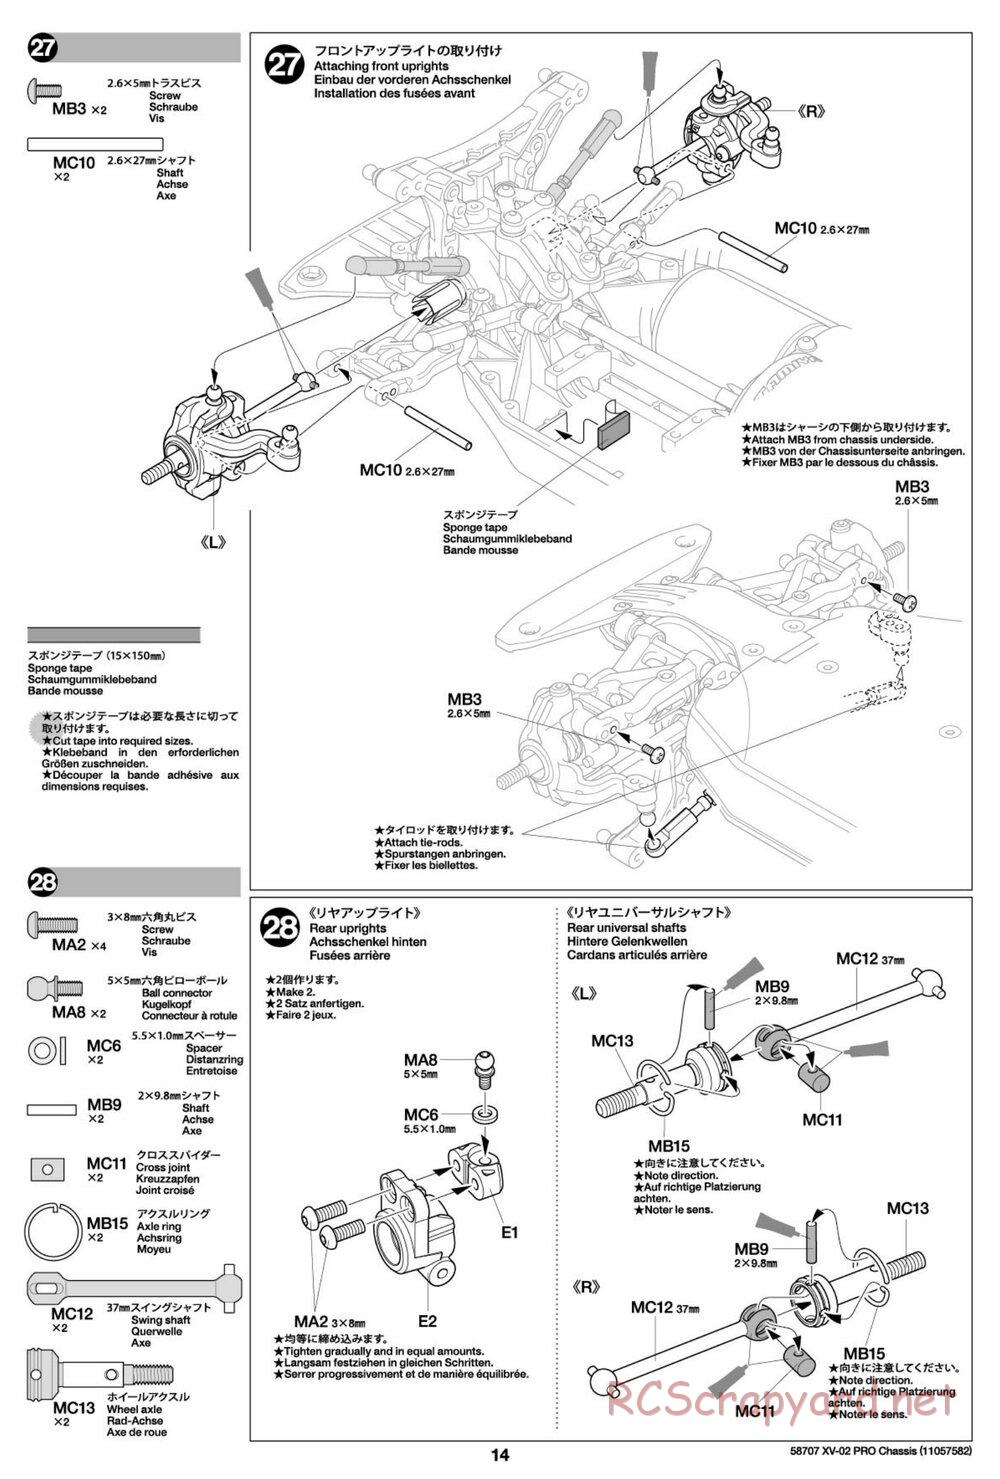 Tamiya - XV-02 Pro Chassis - Manual - Page 14